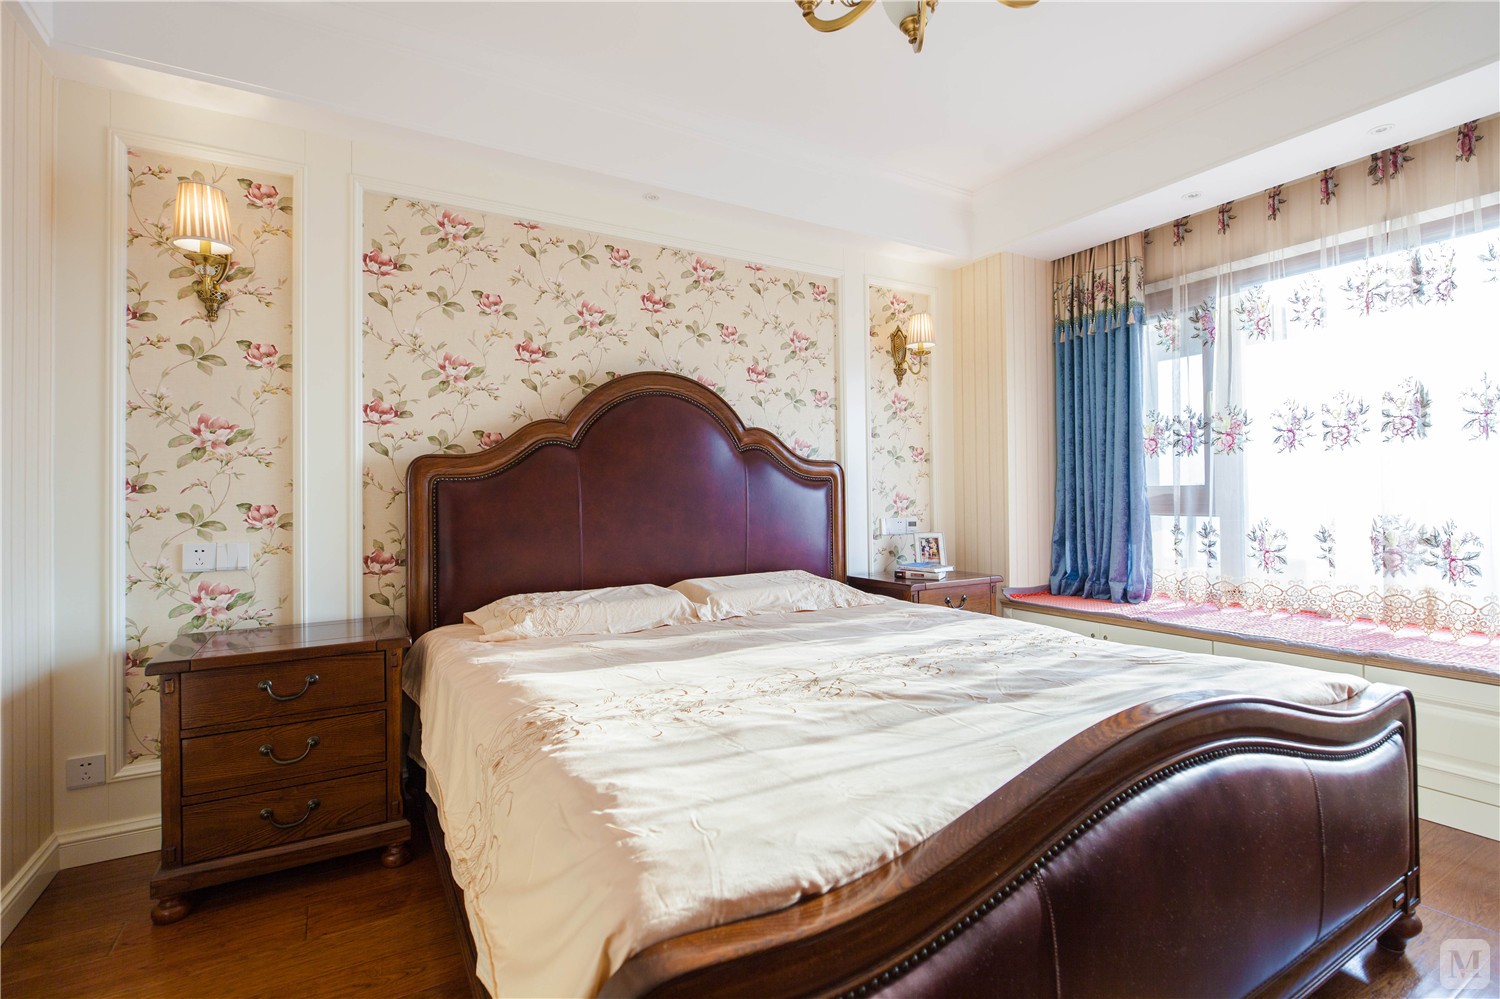 原木色的家具配以花枝连绵的壁纸与窗帘,在沉稳中融入温馨与浪漫